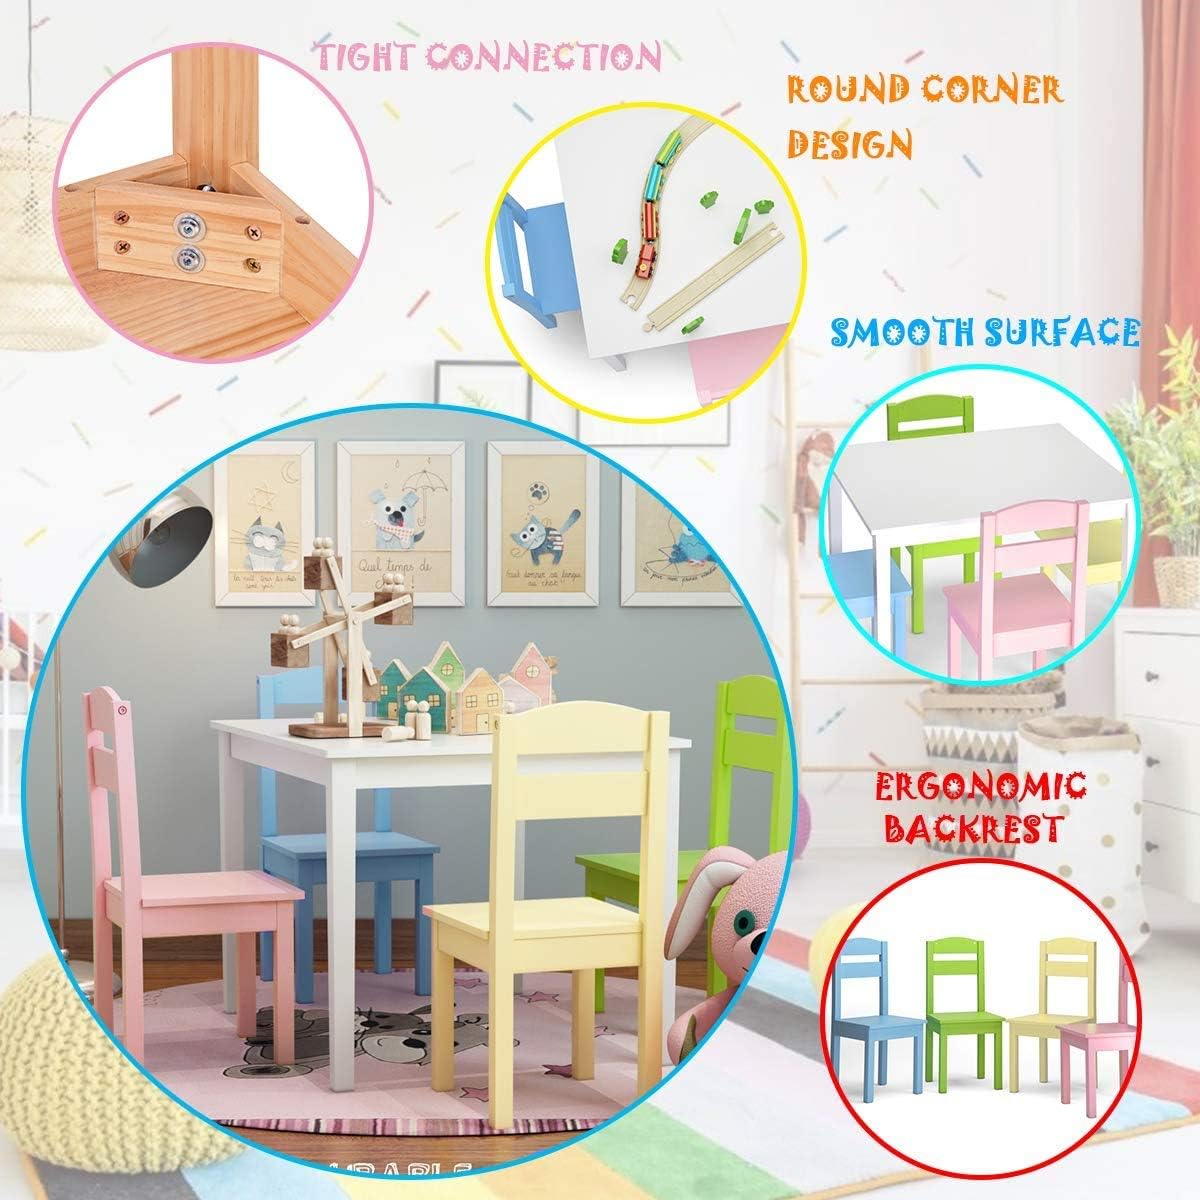 Moccha Juego de sillas de mesa de madera para niños, mesa colorida y 4 sillas